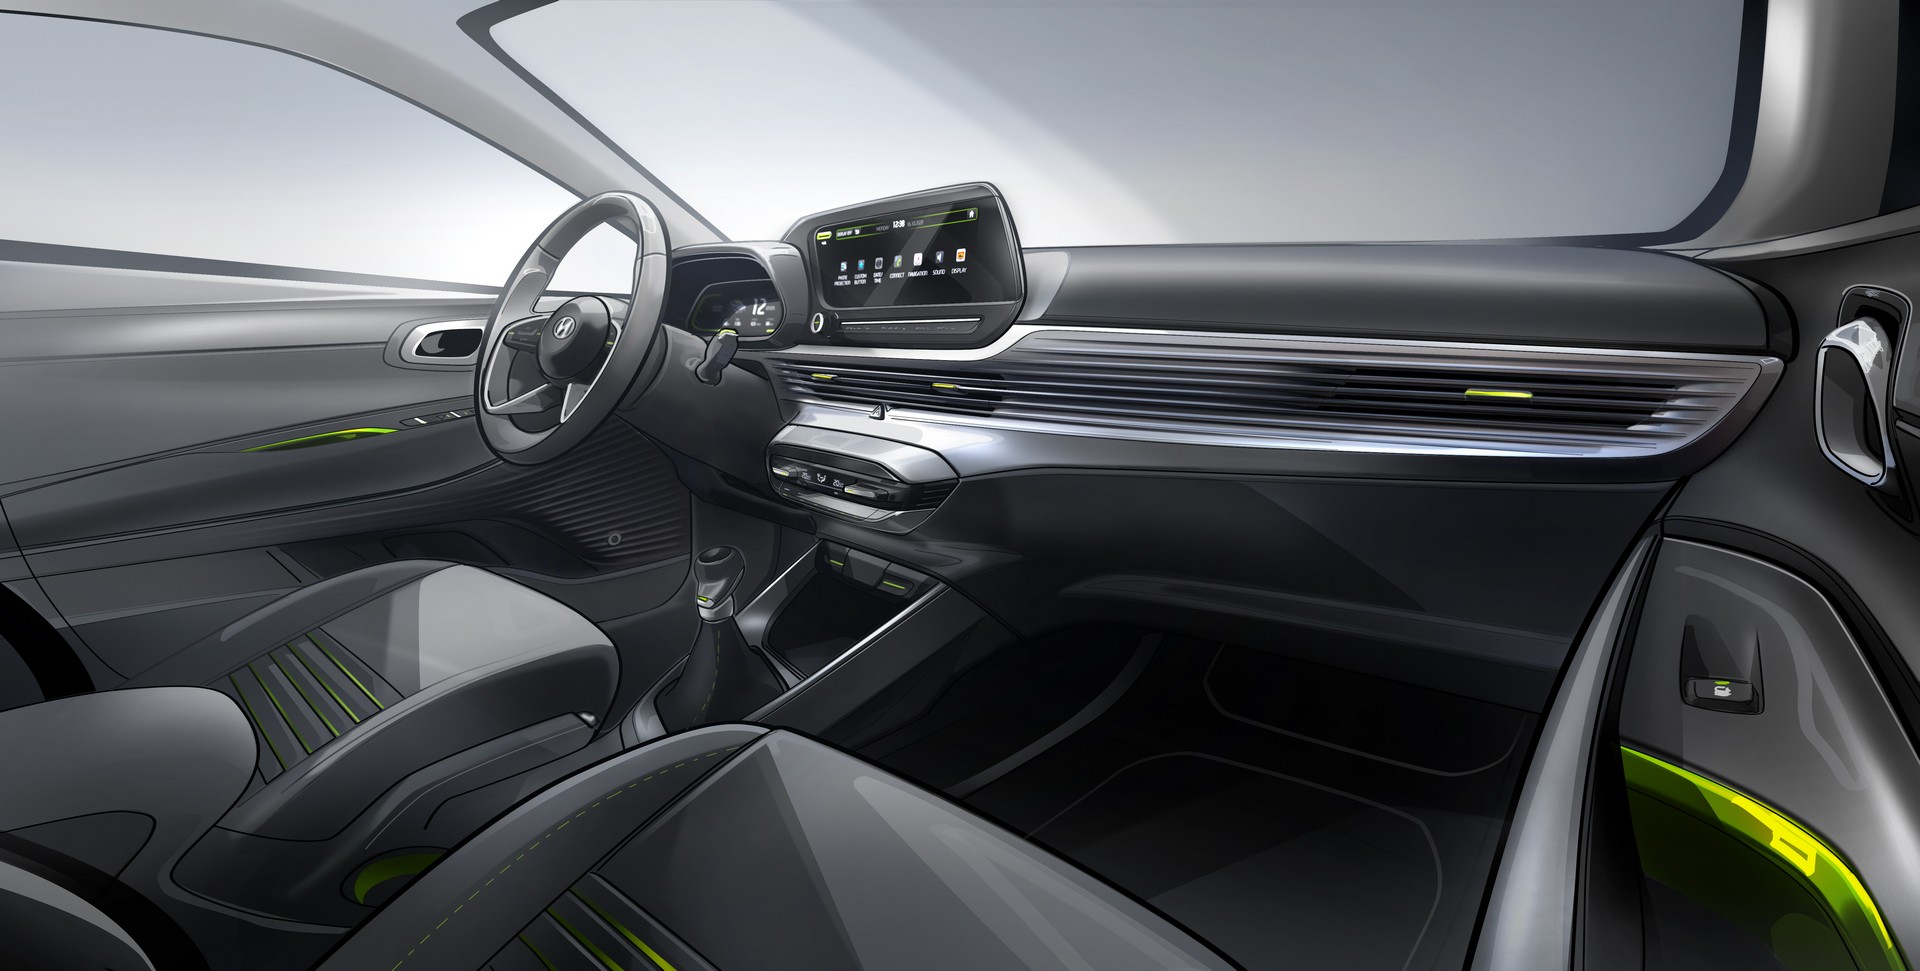 2020 Hyundai i20 tanıtıldı: Yepyeni tasarım ve hibrit motor